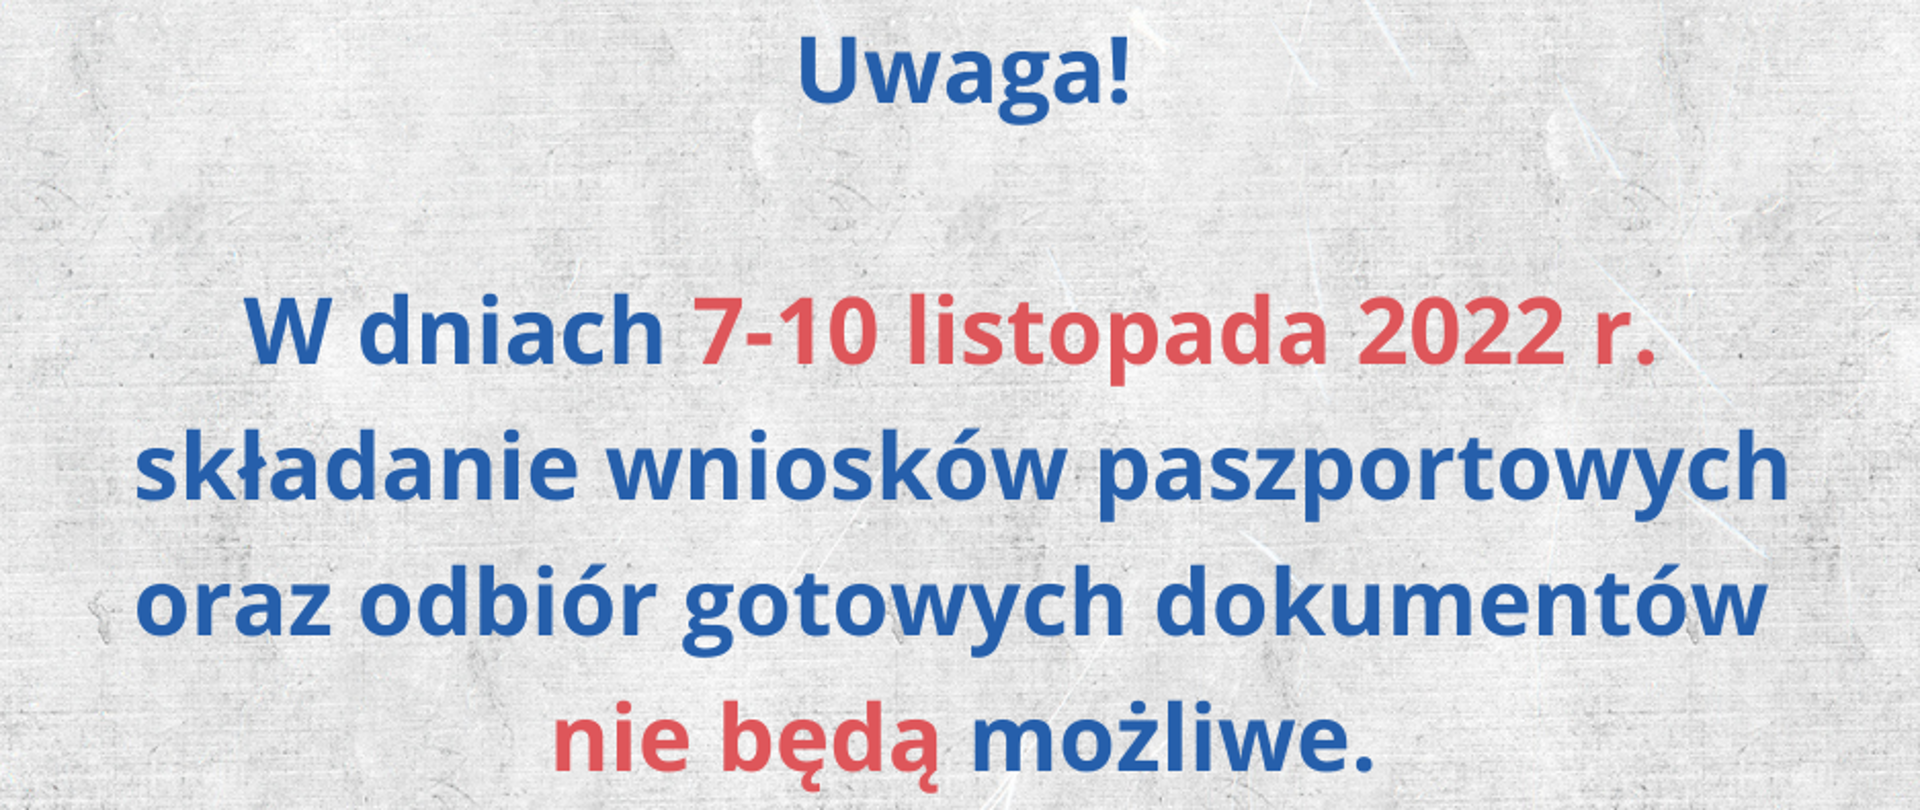 Uwaga! W dniach 7-10 listopada 2022 r. składanie wniosków paszportowych oraz odbiór gotowych dokumentów w Polkowicach nie będą możliwe 